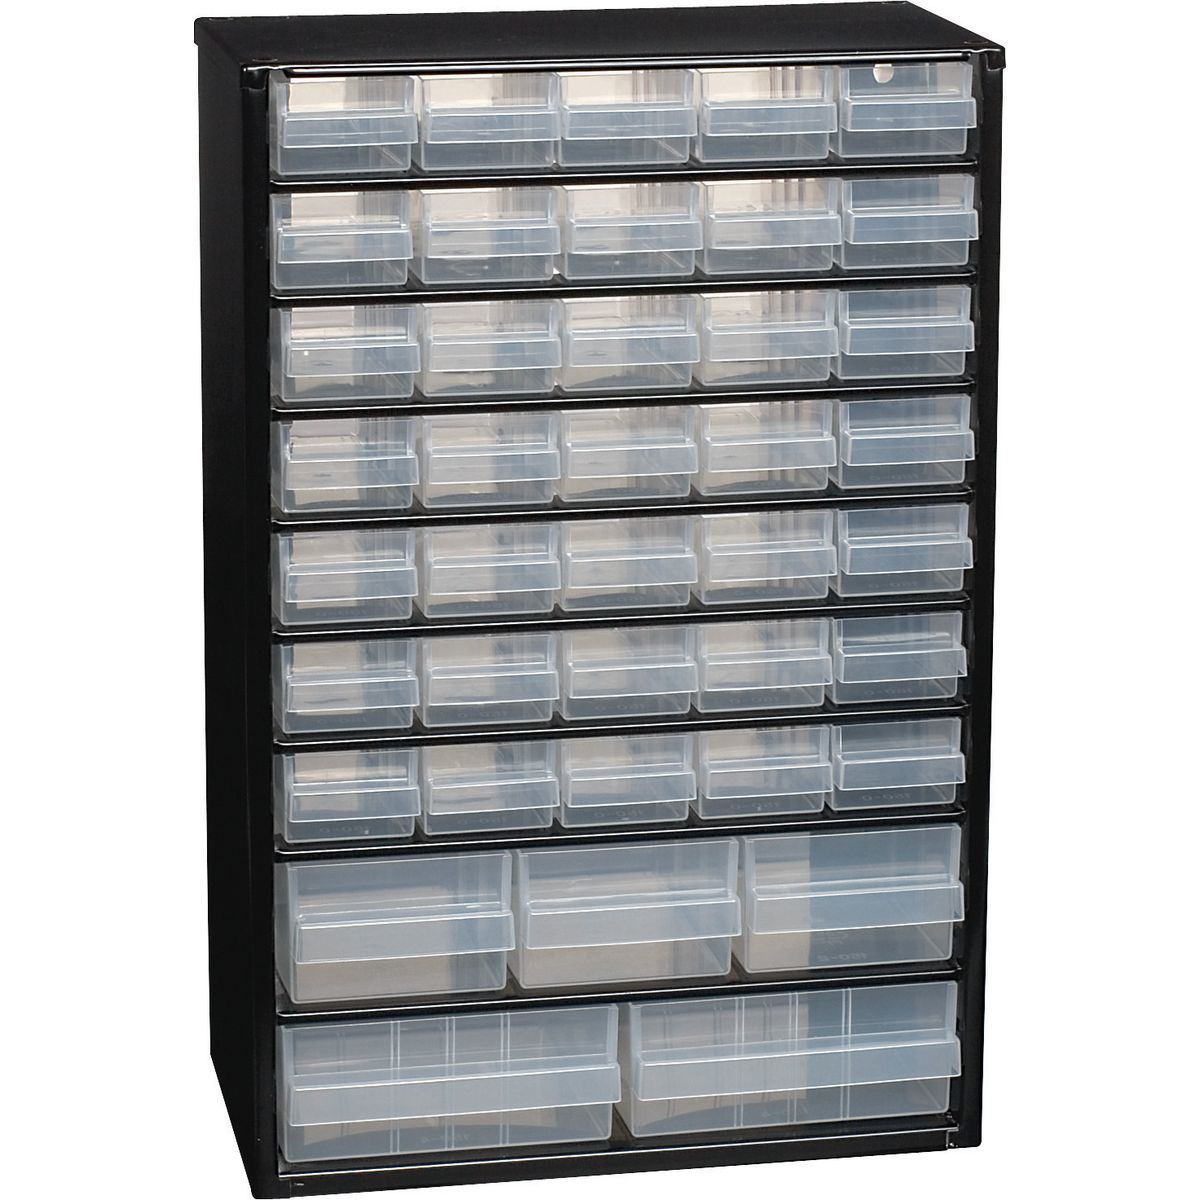 Bacs, casiers de rangement - Casier support métal 40 tiroirs